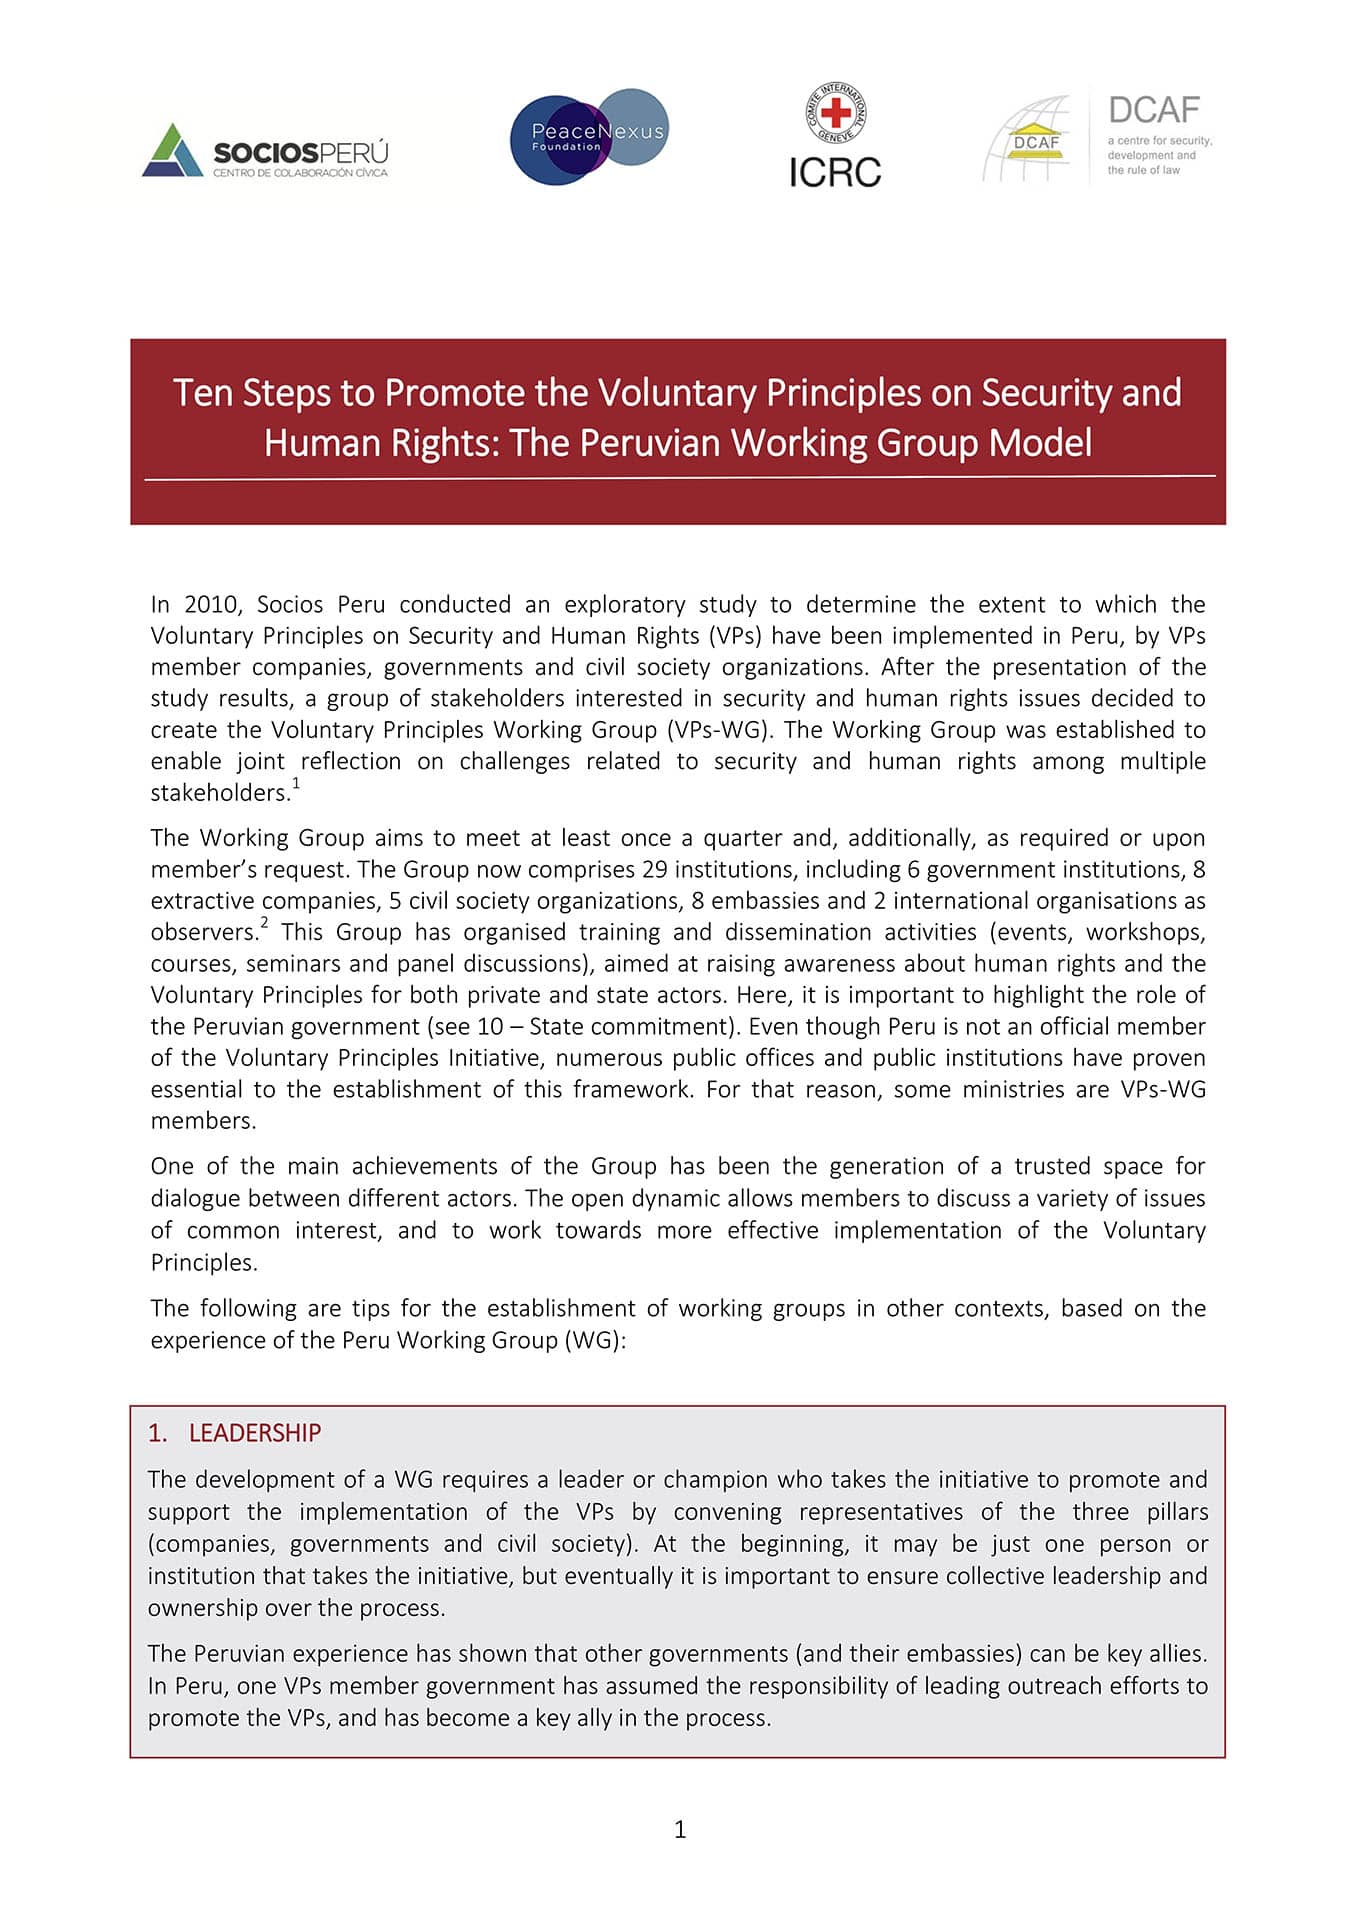 Diez pasos para promover los Principios Voluntarios de Seguridad y Derechos Humanos: El Modelo Peruano del Grupo de Trabajo (DCAF, CICR, Socios Peru, y PeaceNexus, 2016)